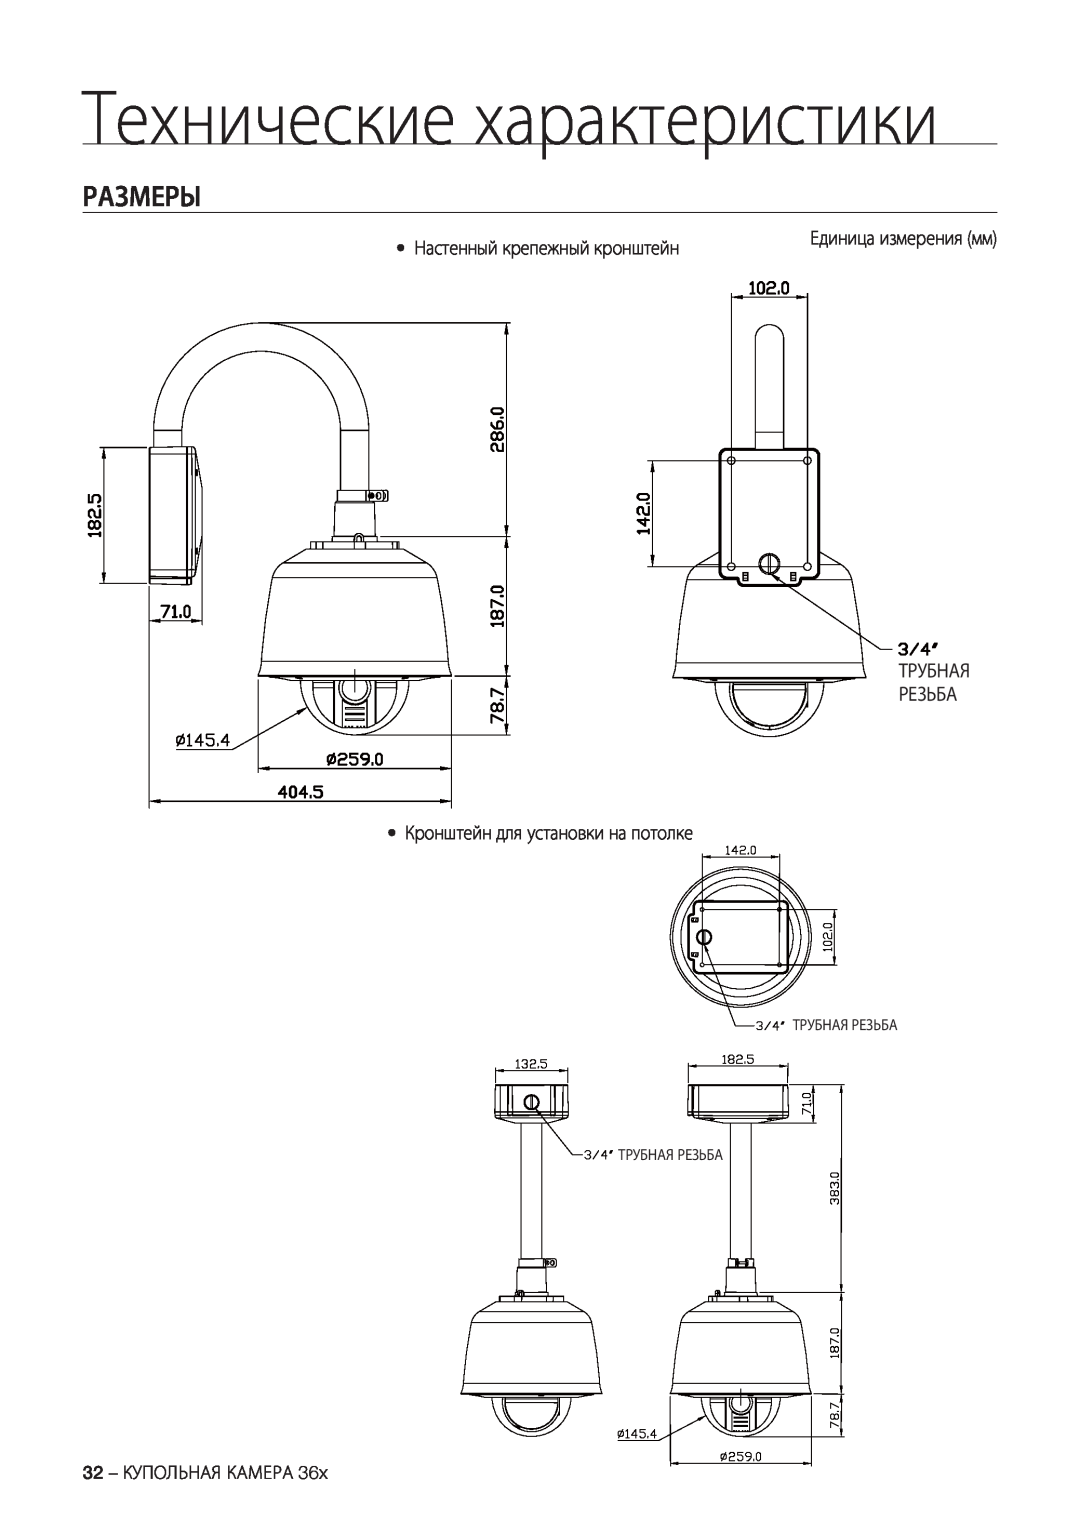 Samsung SCC-C7478P manual Размеры, Технические характеристики, Настенный крепежный кронштейн 